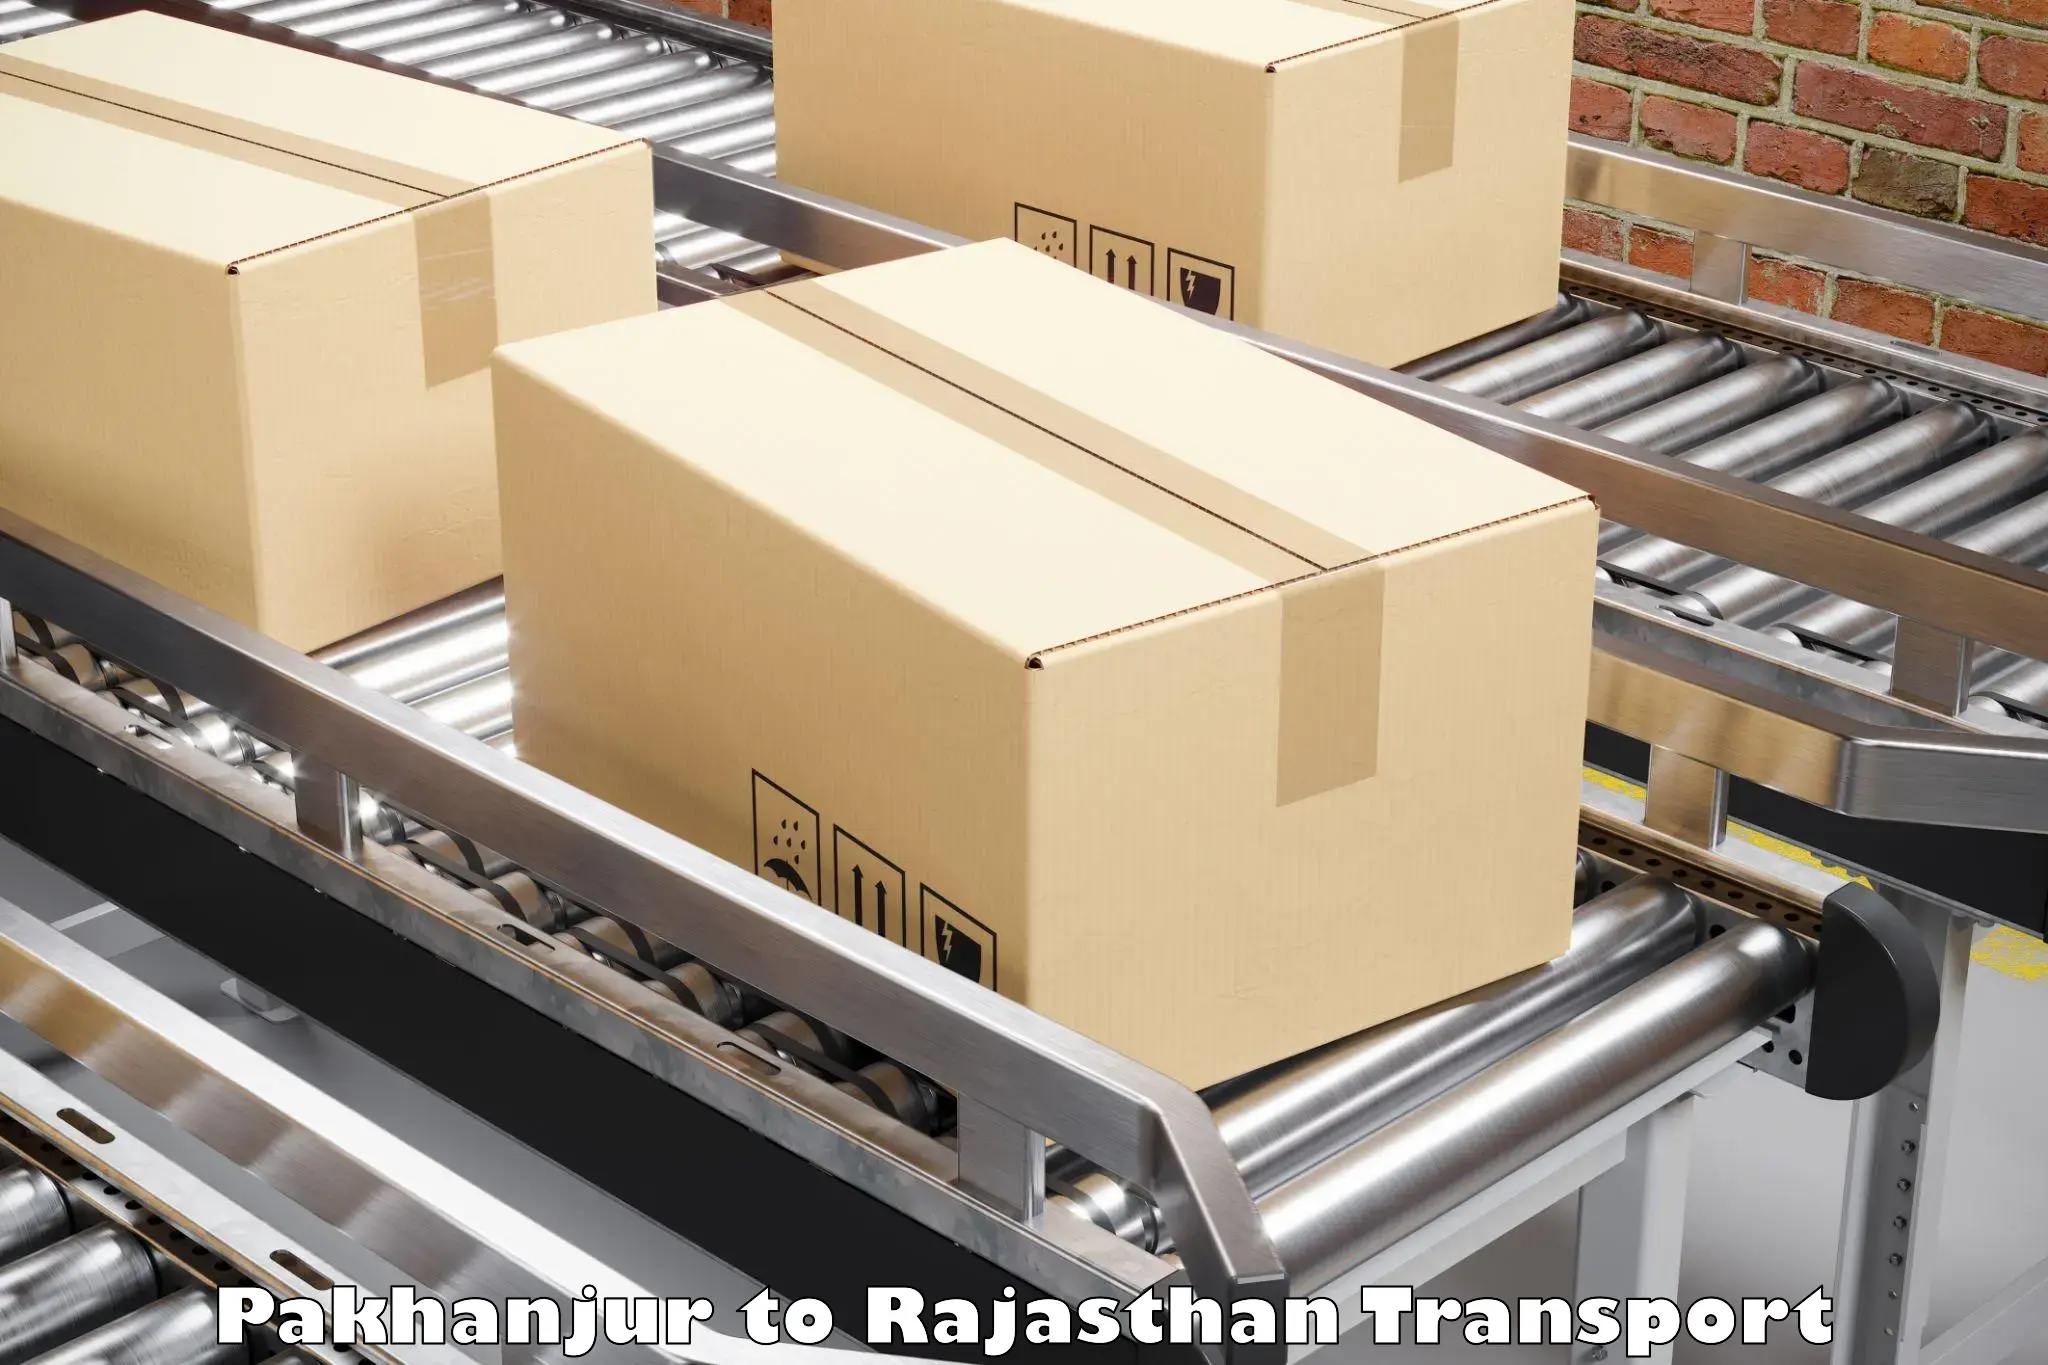 Interstate goods transport Pakhanjur to Chaksu